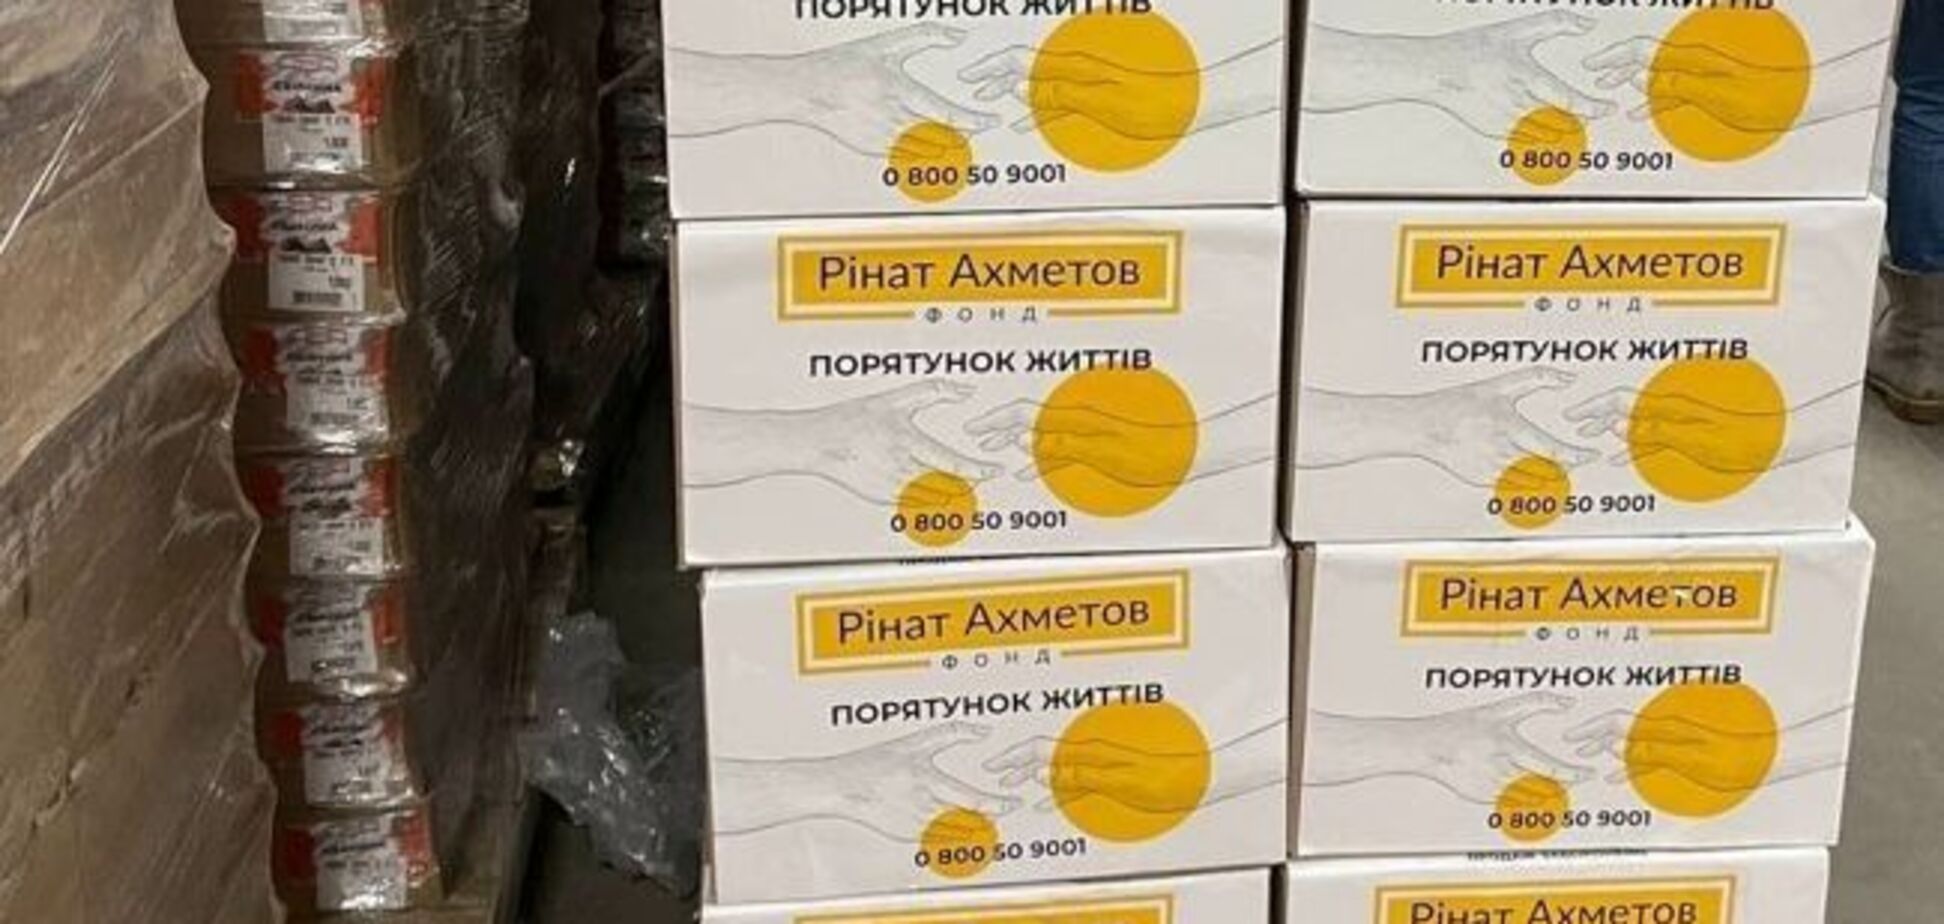 Київські терцентри захисту вже забезпечені продуктами – Фонд Ахметова